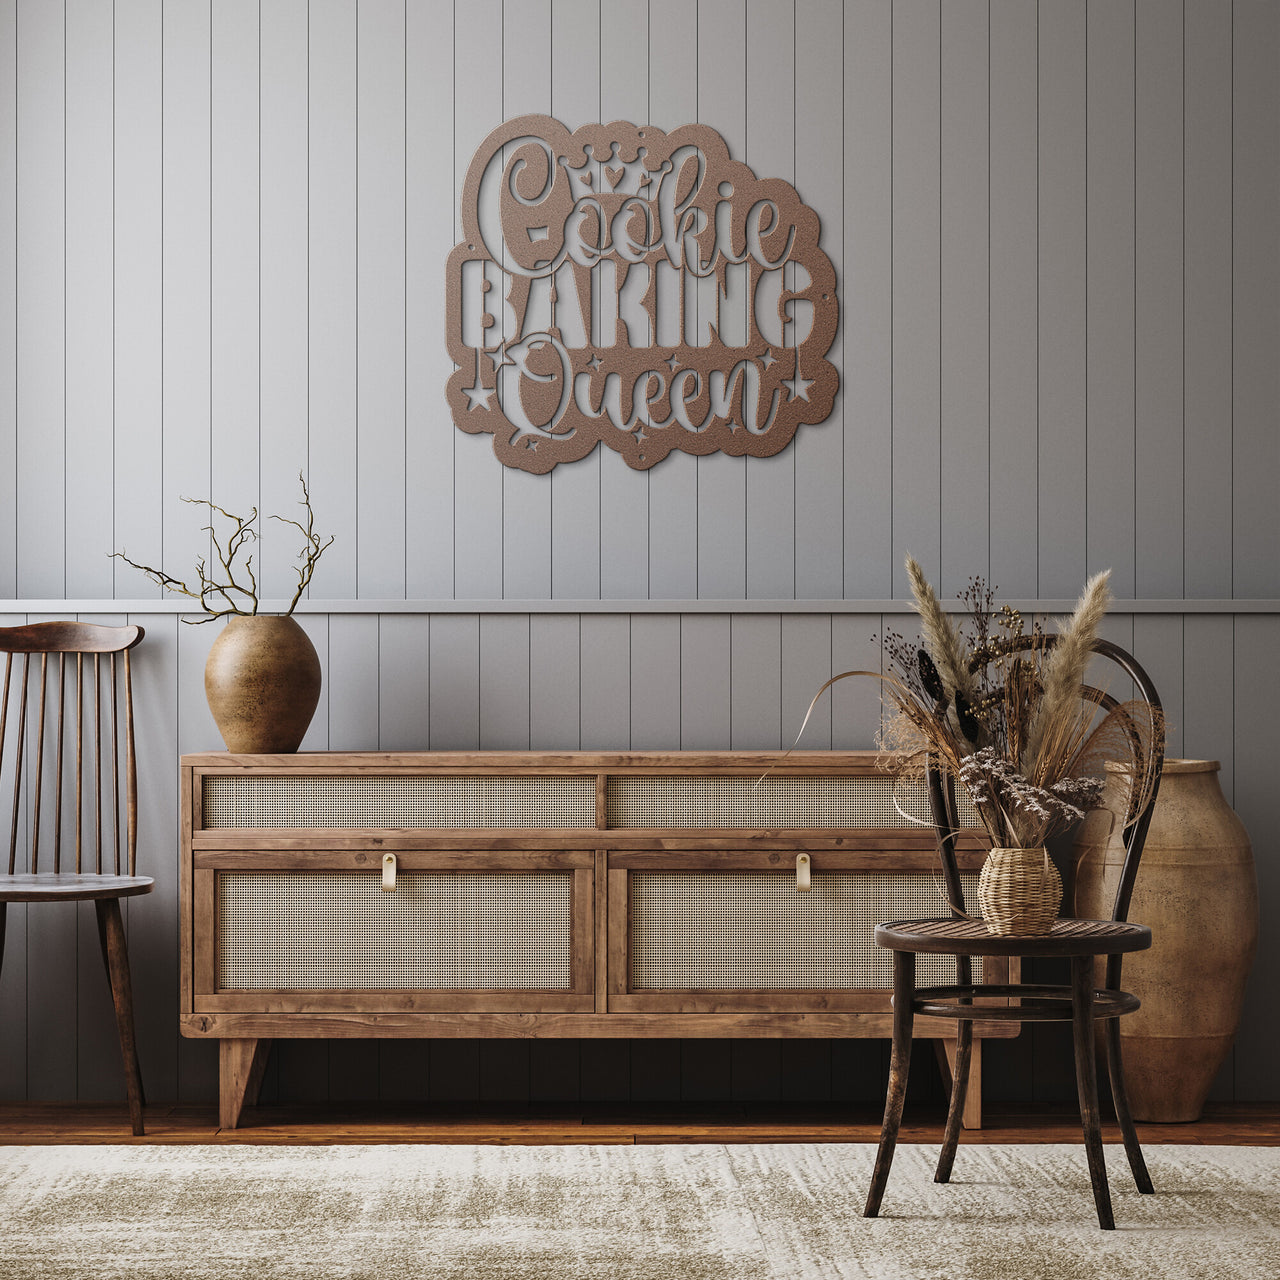 CookieBakingQueen-v3_Steel Wall Art